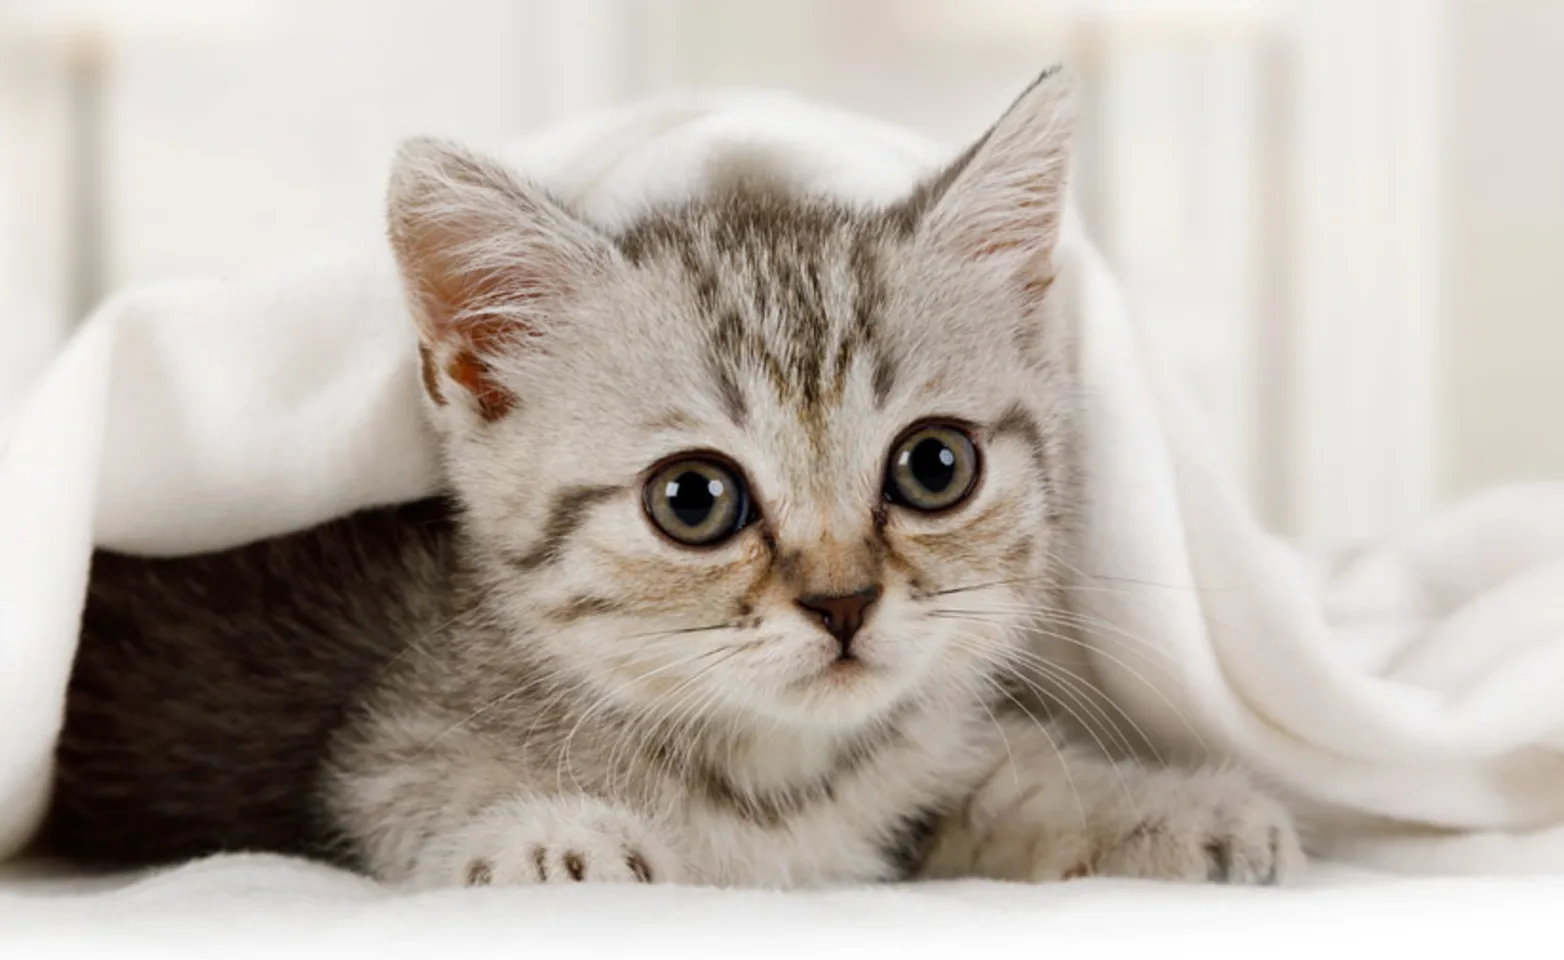 Kitten cuddles under a blanket